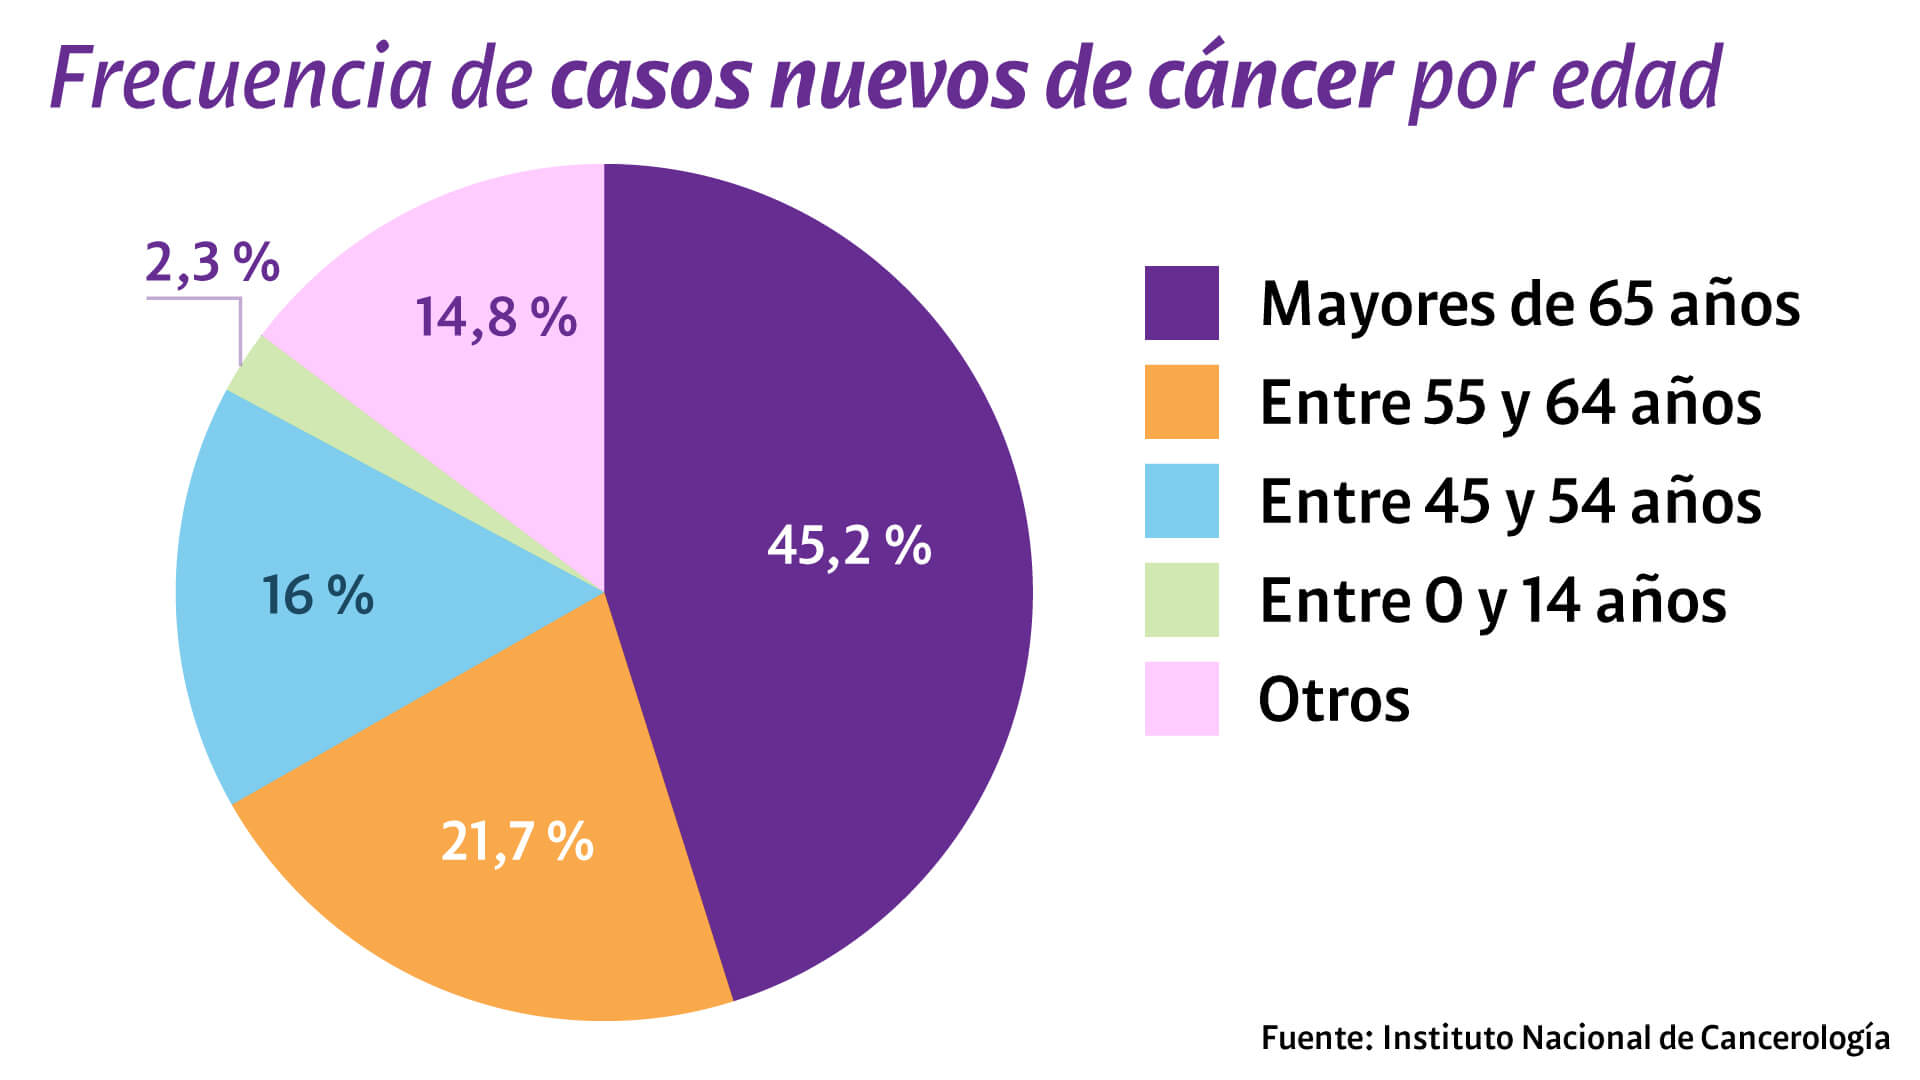 Diagnosticar a tiempo, el desafío de Colombia para avanzar en la lucha contra el cáncer